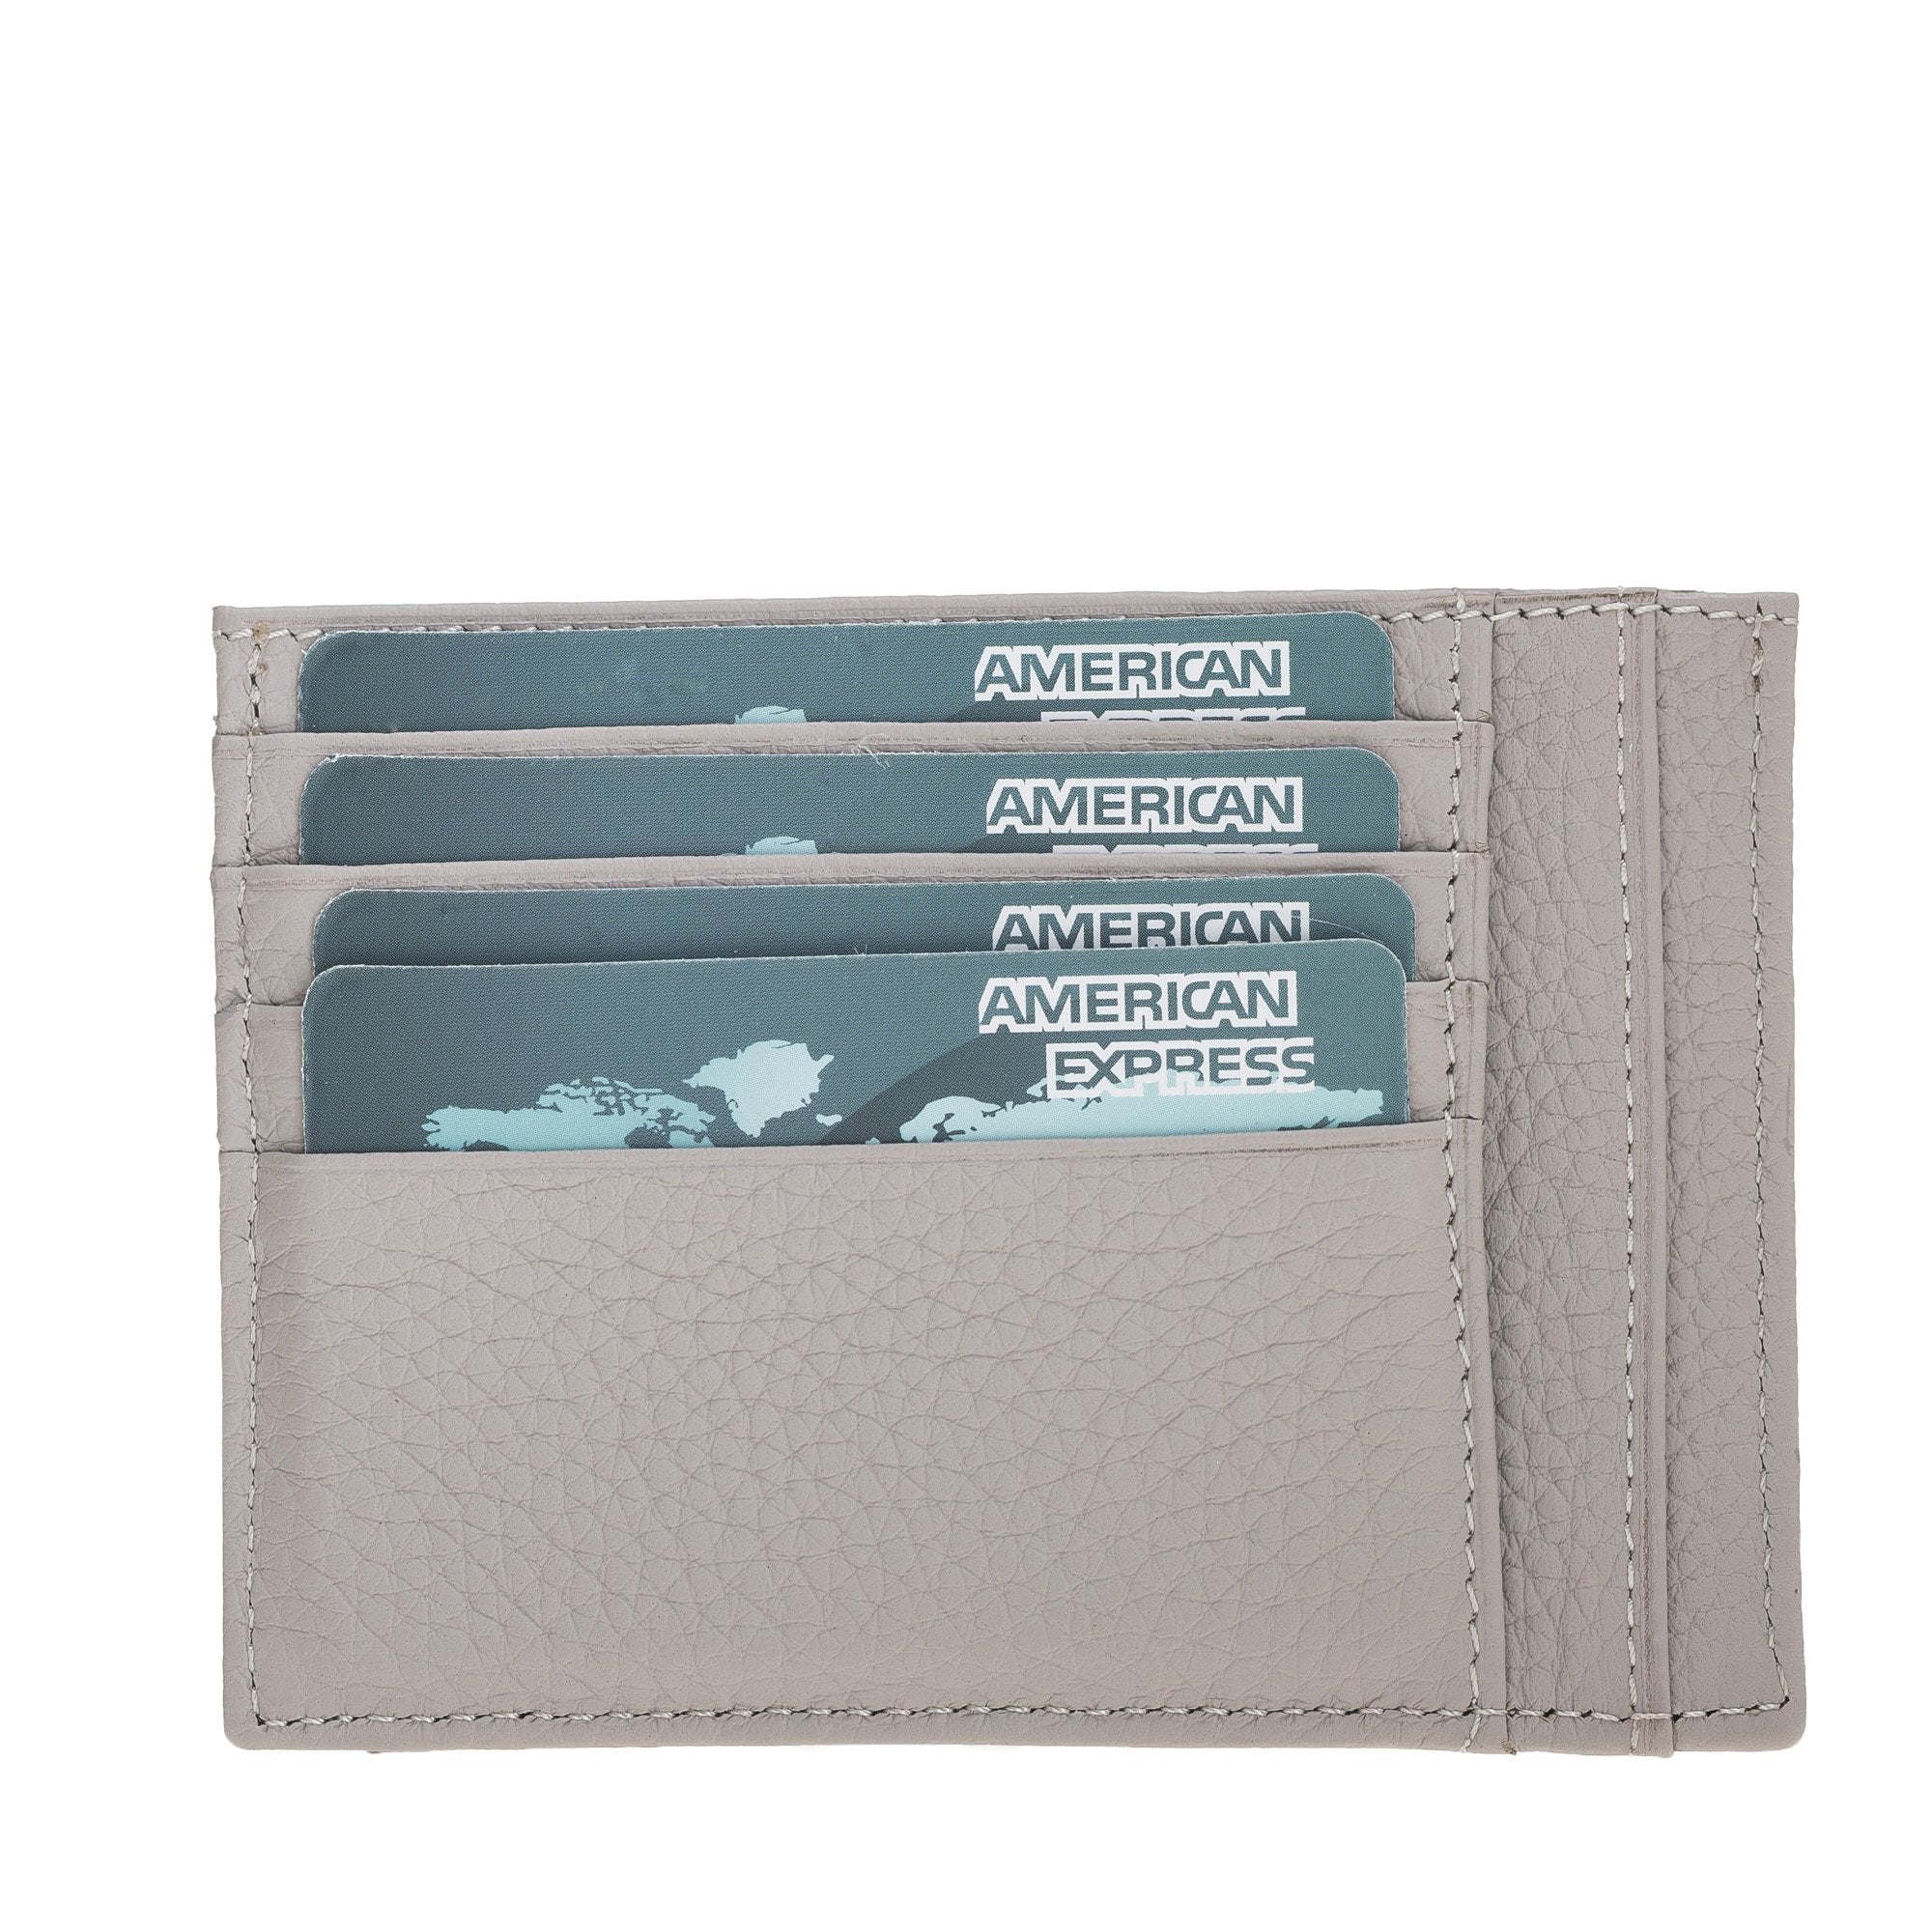 Zip Slim Full Grain Leather Wallet & Card Holder Bayelon